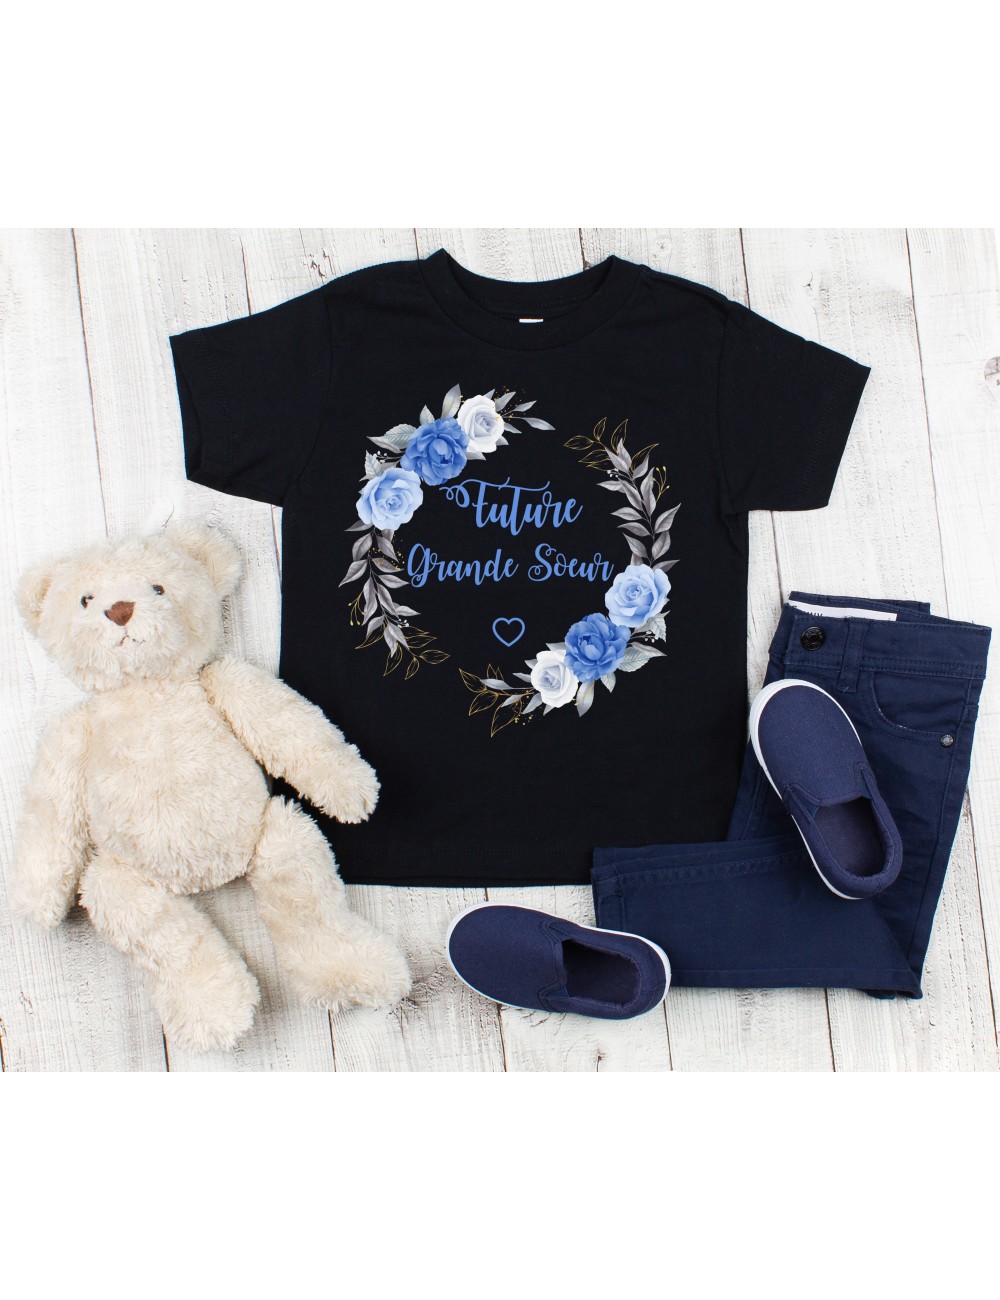 T-Shirt noir pour enfant fille future grande soeur fleurs bleues 